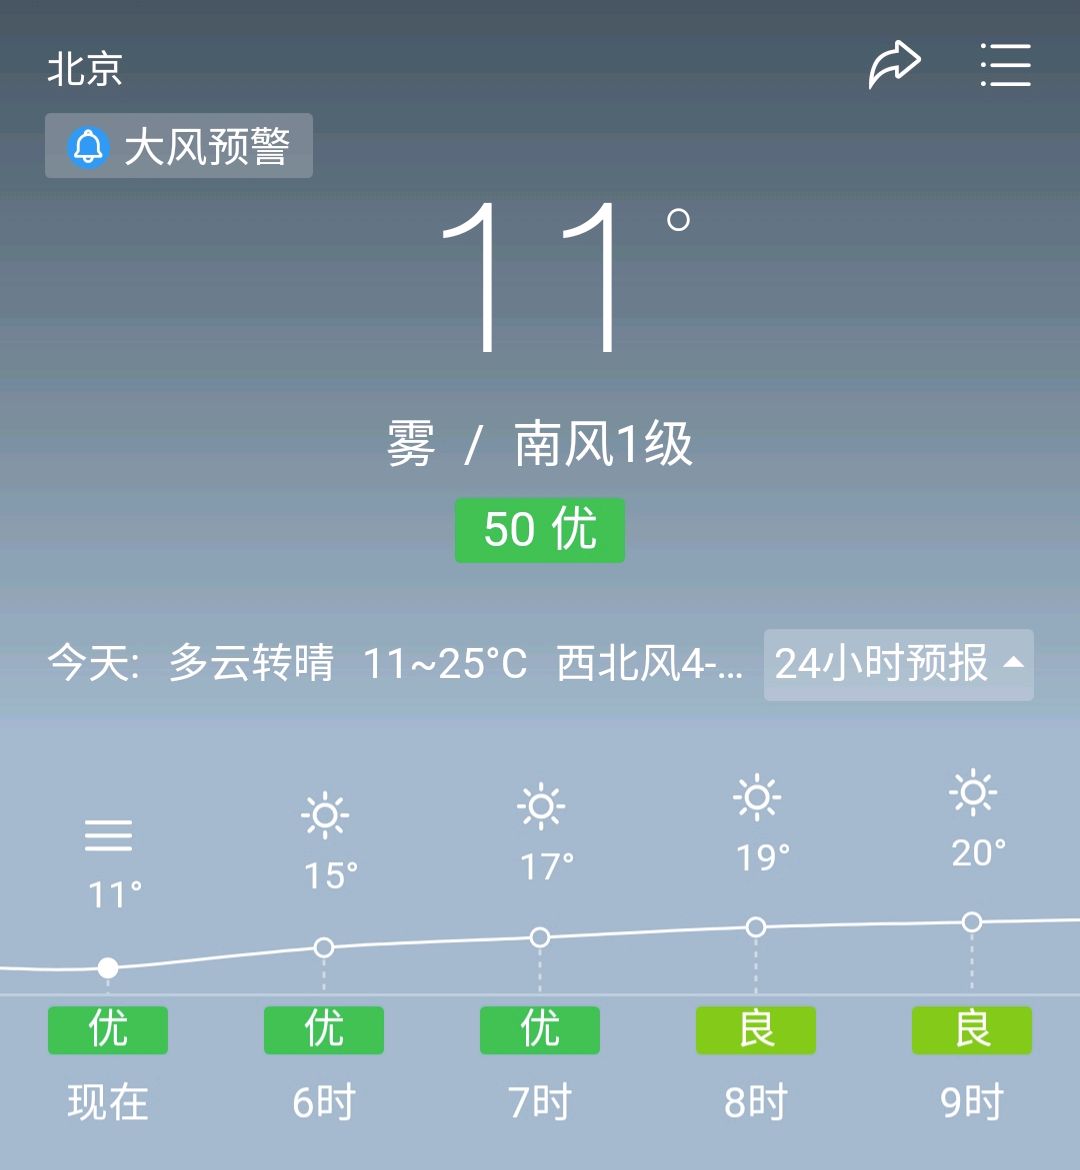 北京:今日(5月10日)天气预报